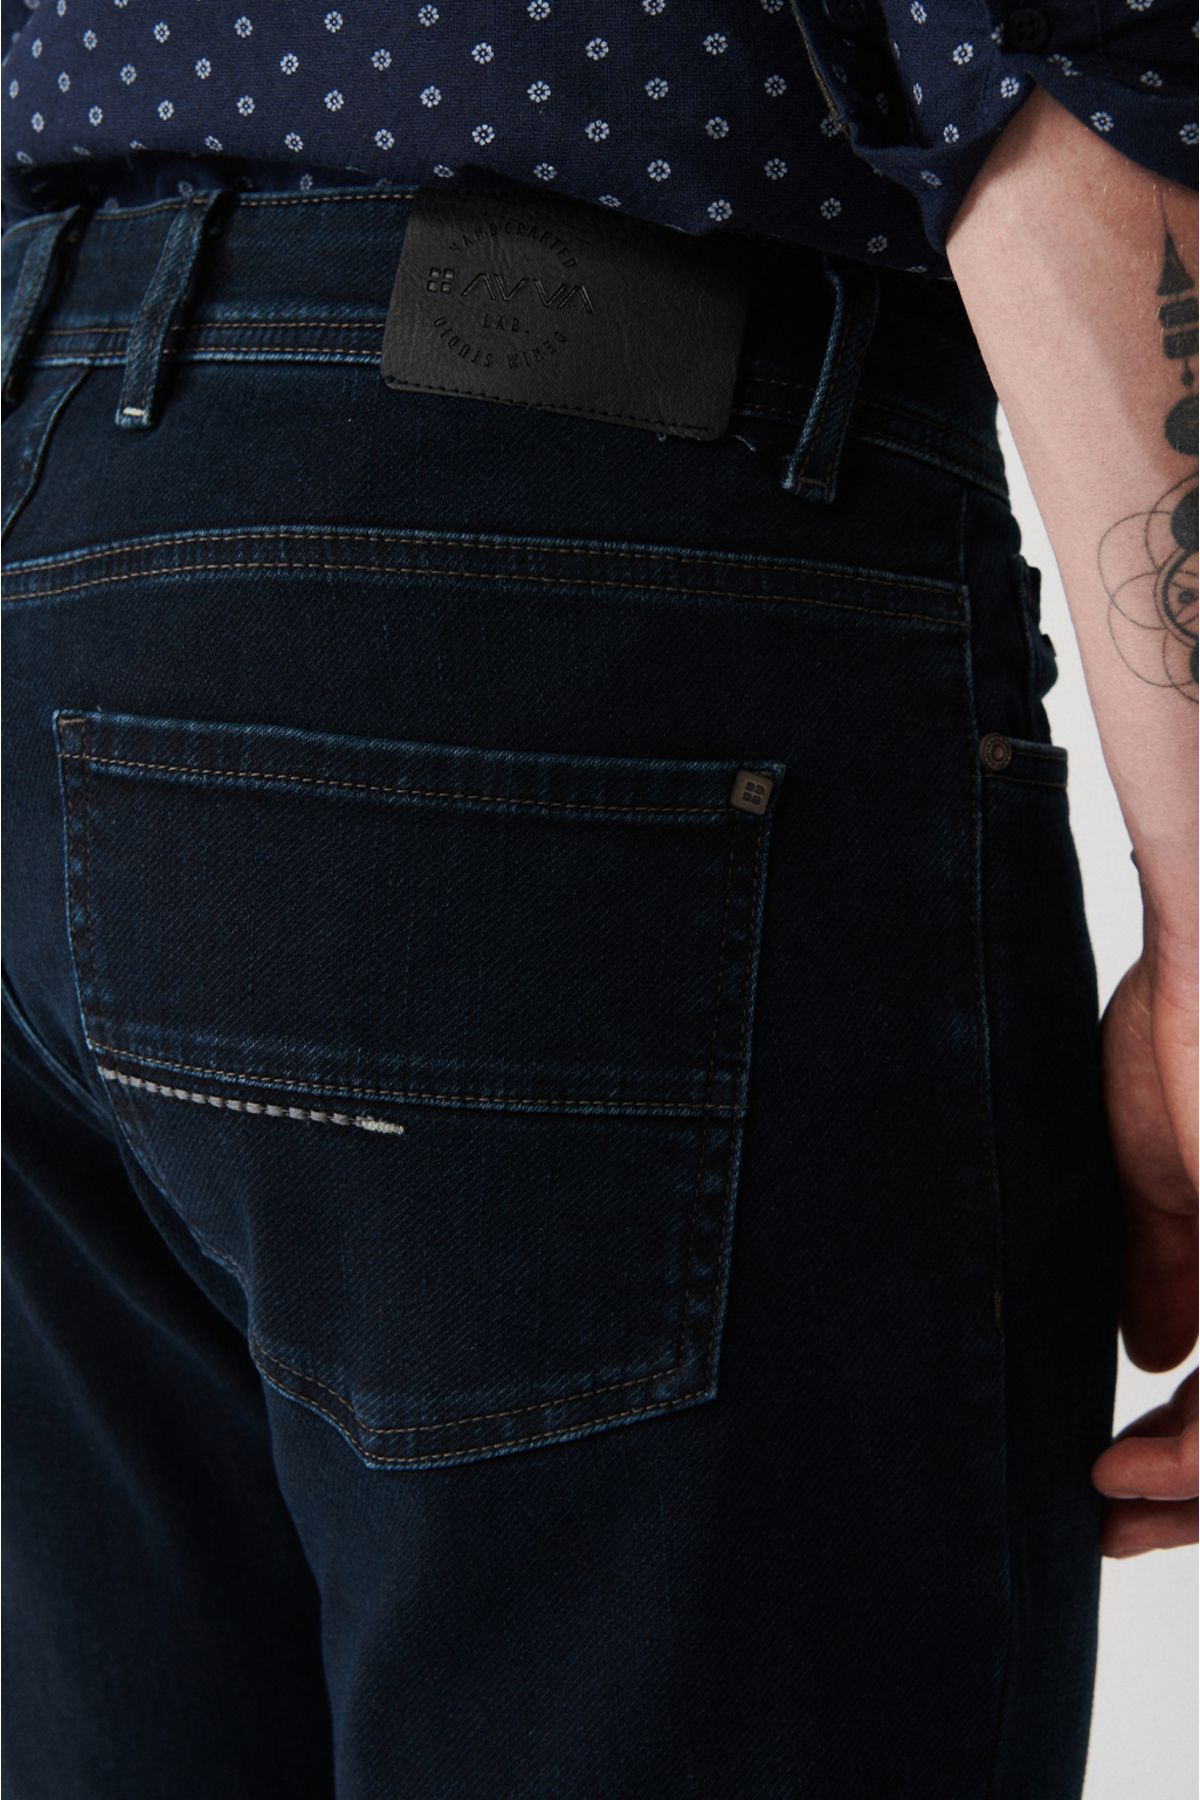 Avva شلوار جین مردانه آبی ناوی وینتیج شسته شده انعطاف پذیر باریک و Fit B003521